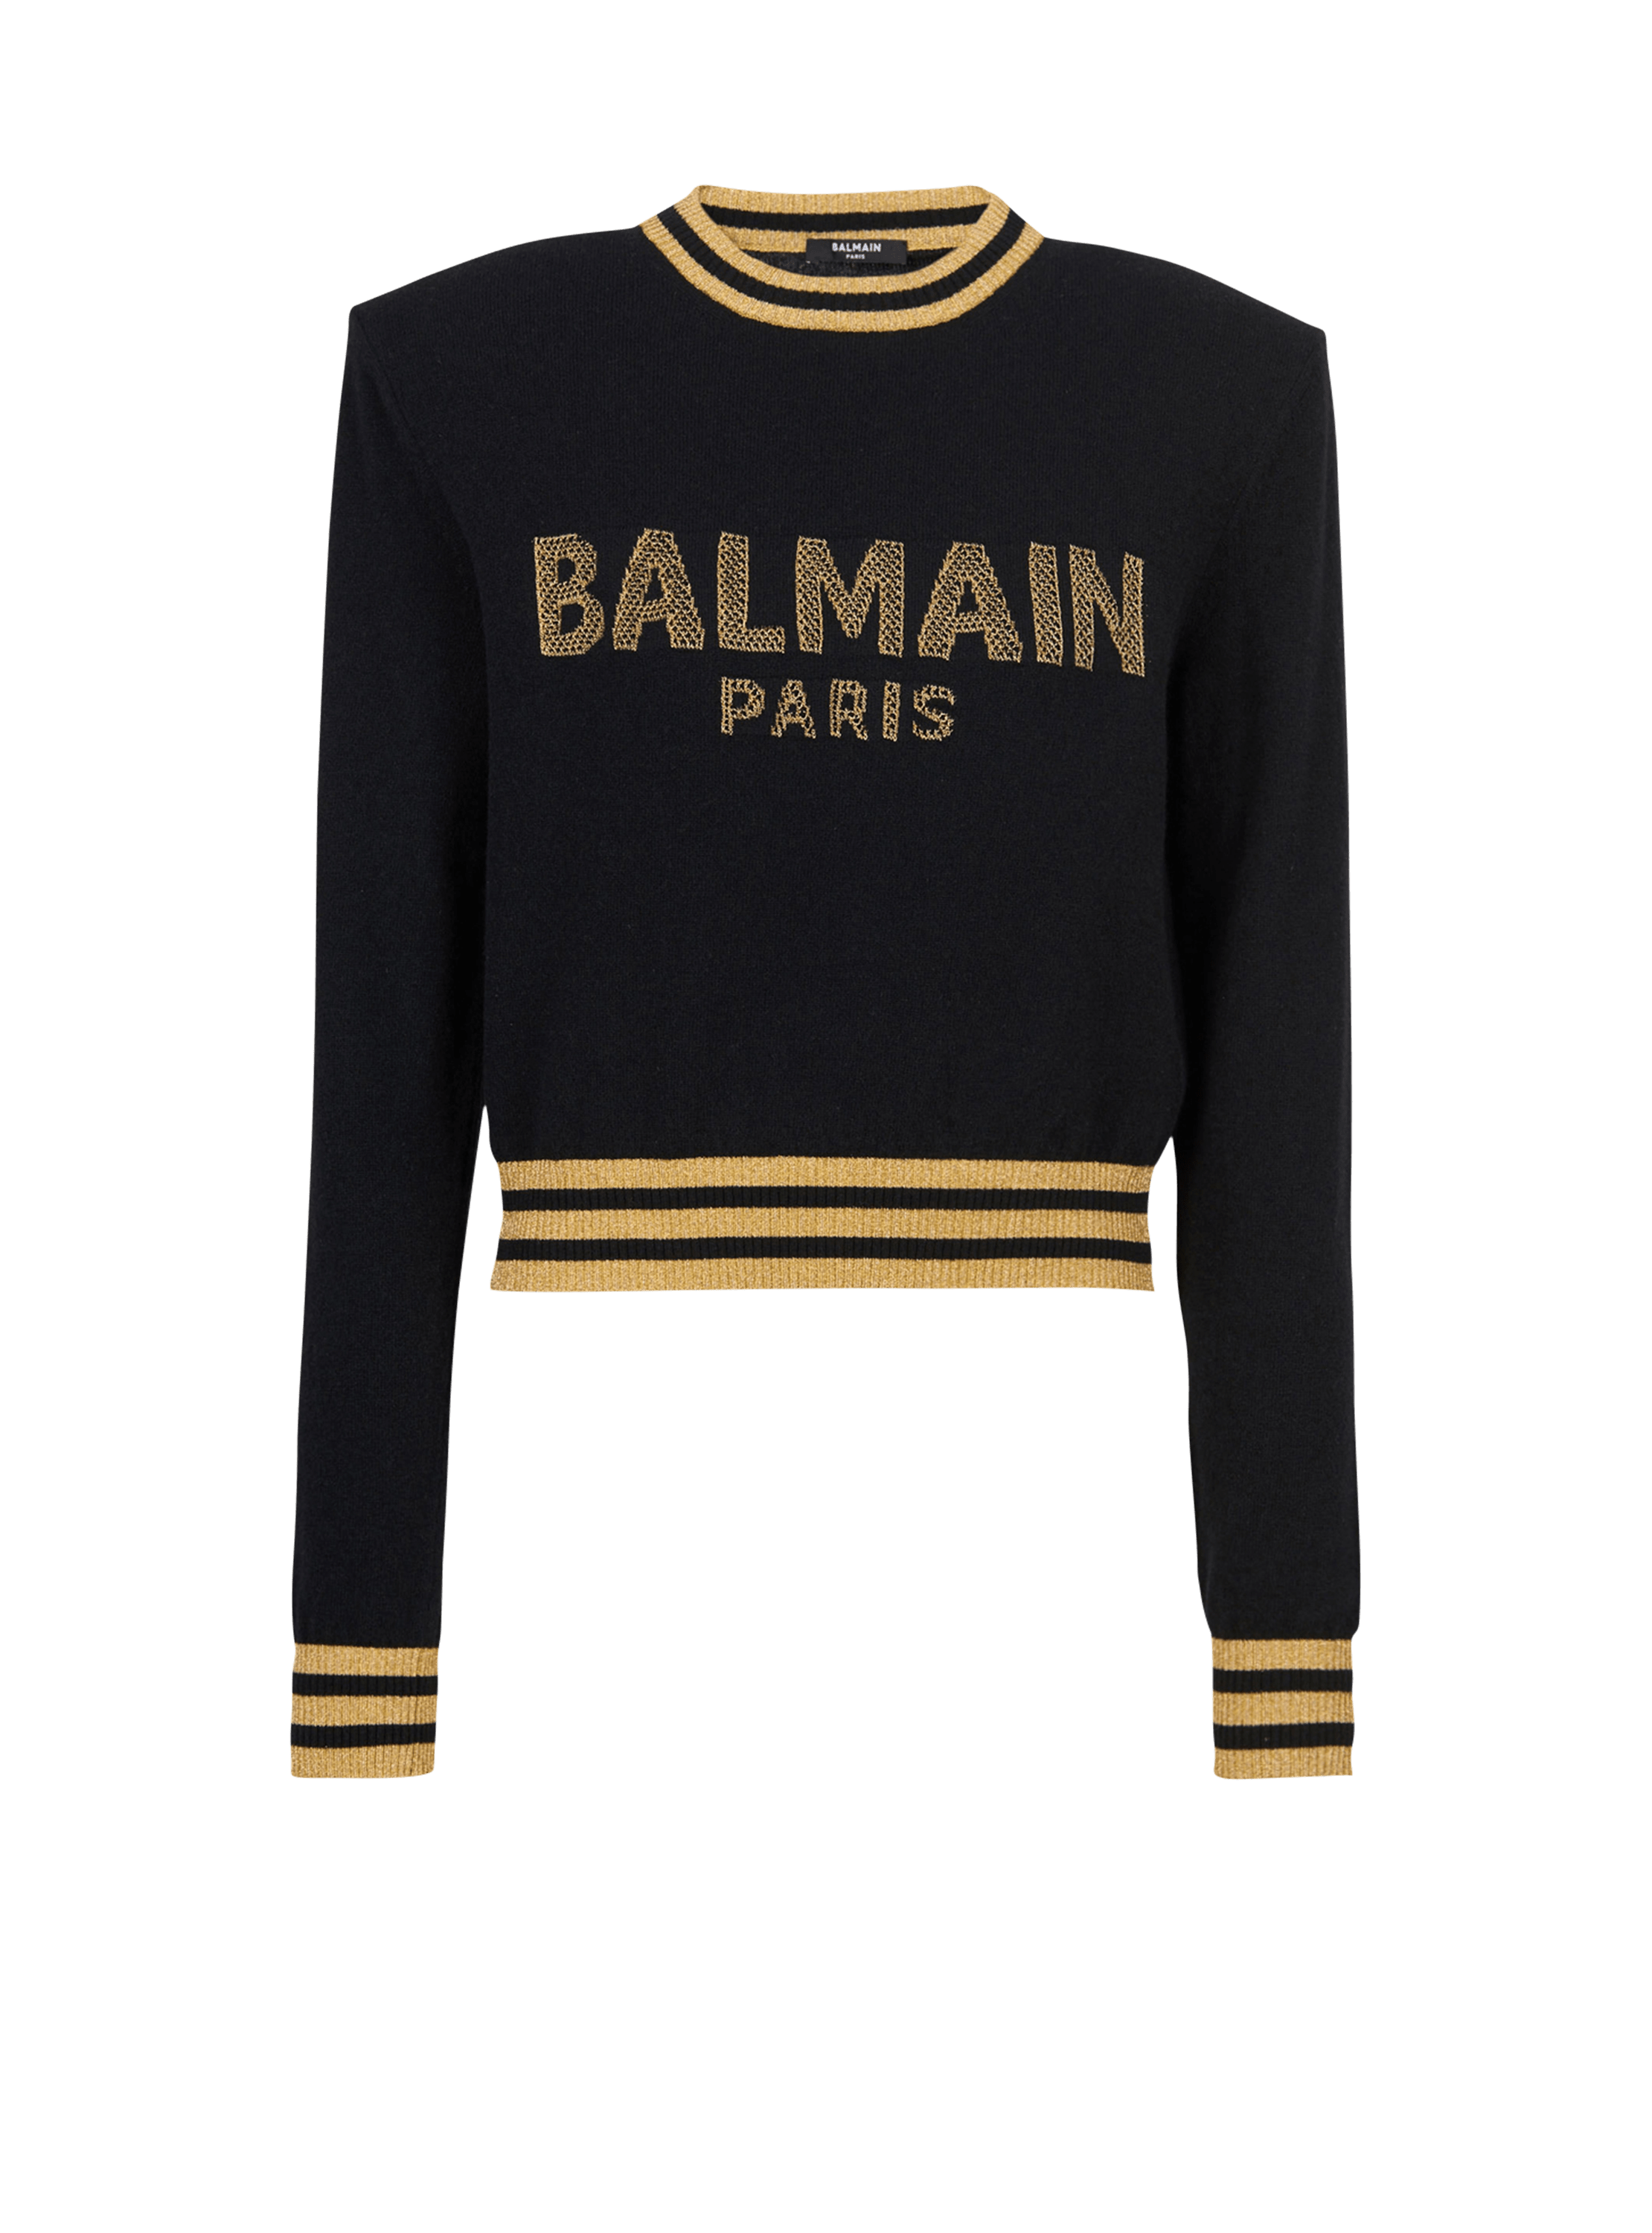 Cropped-Sweatshirt aus Wolle mit goldfarbenem Balmain Logo, schwarz, hi-res